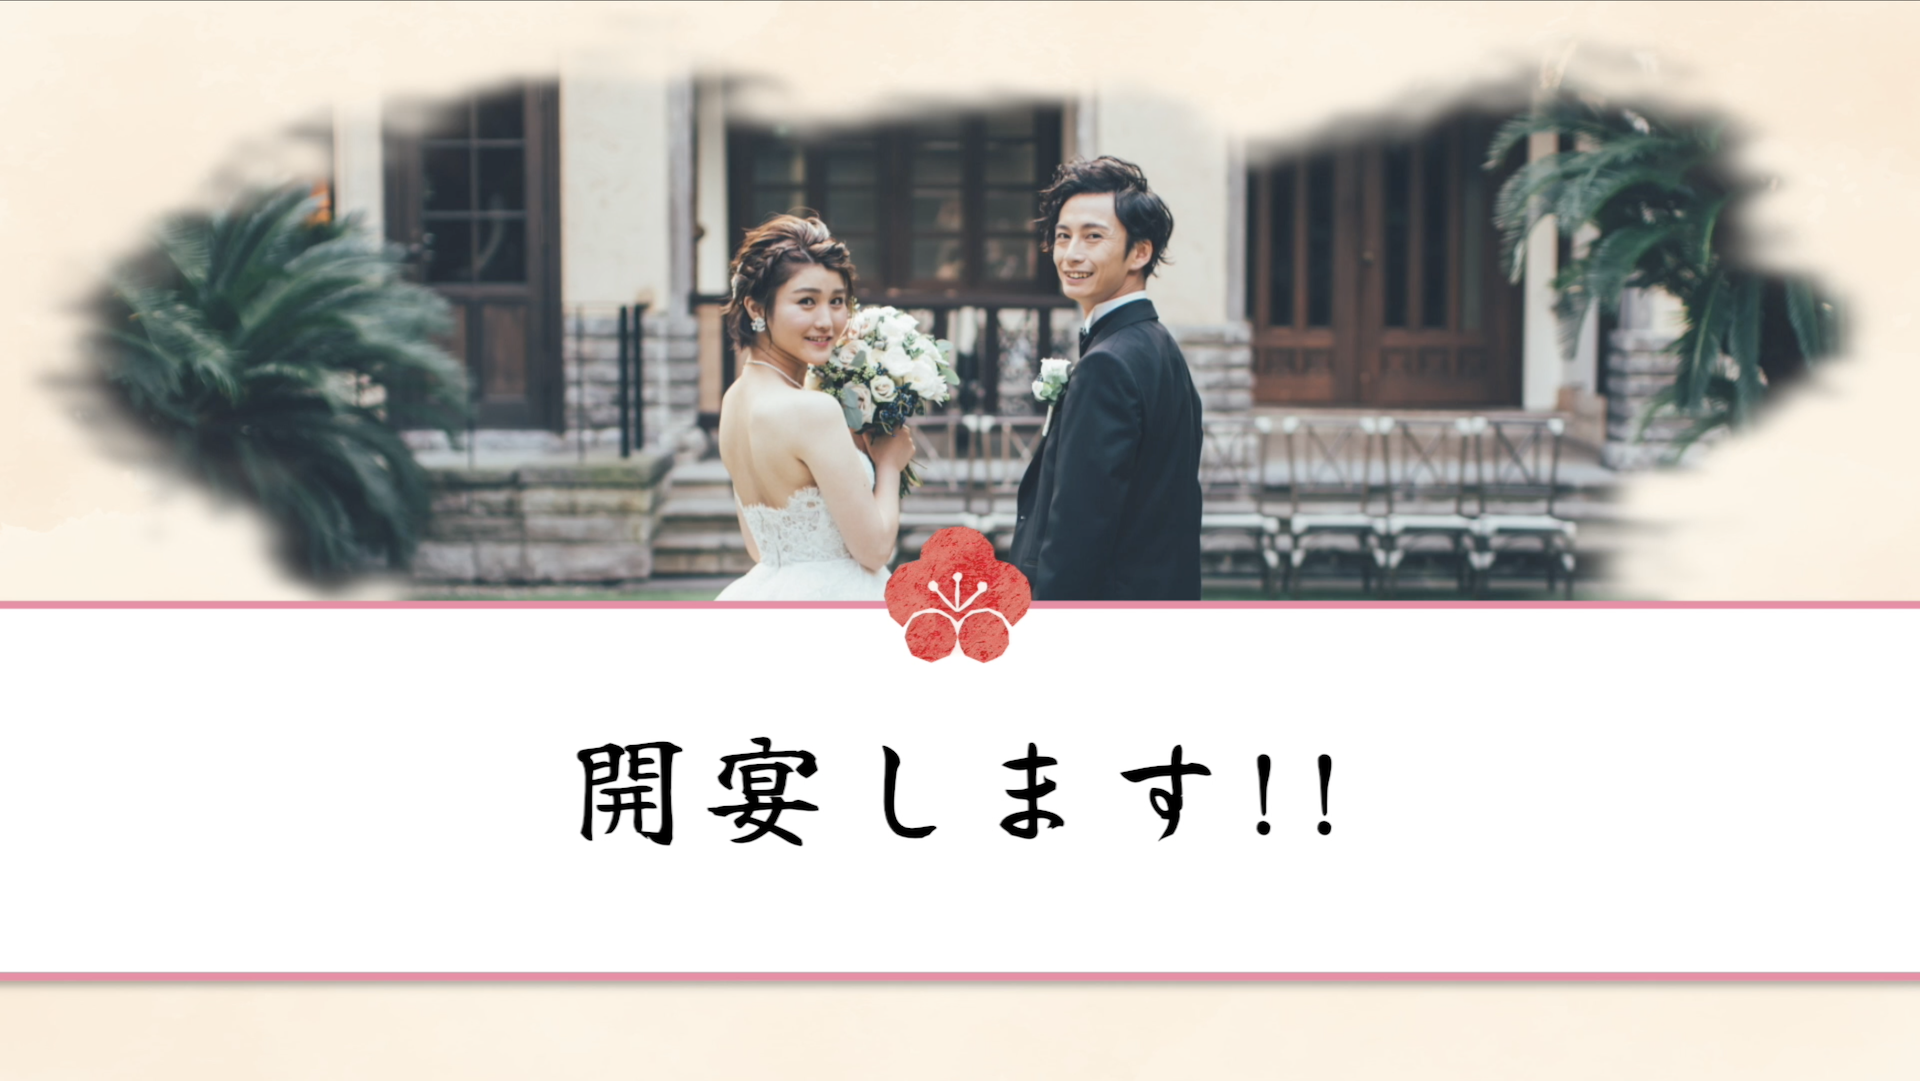 【NEW】結婚式 オープニングムービー 結〜yui〜